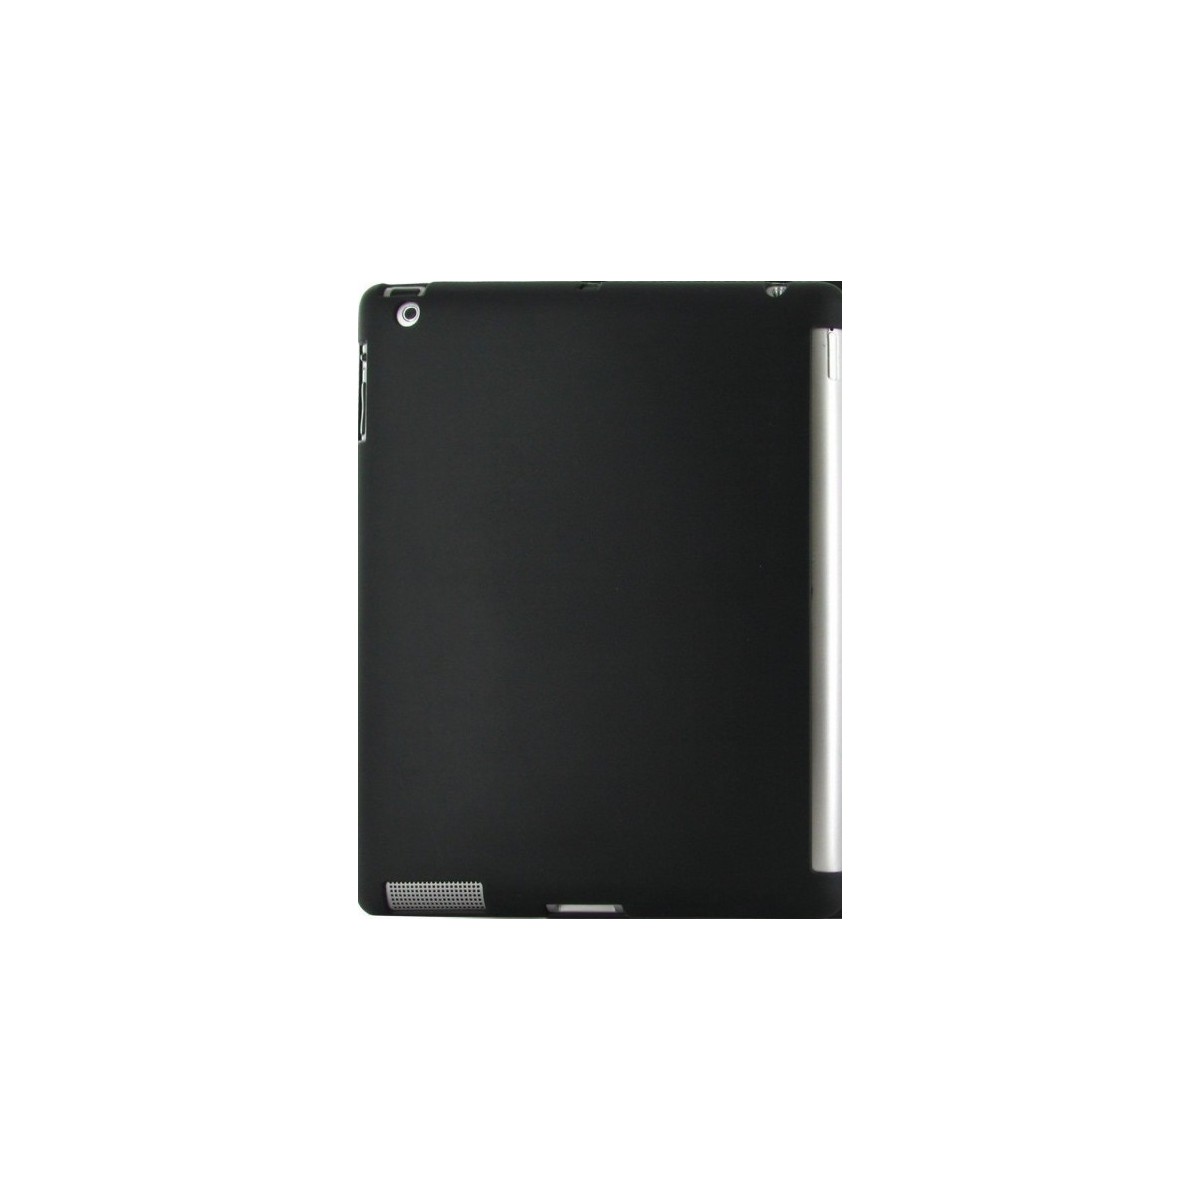 Coque Silicone Gel iPad 3/4 Noir